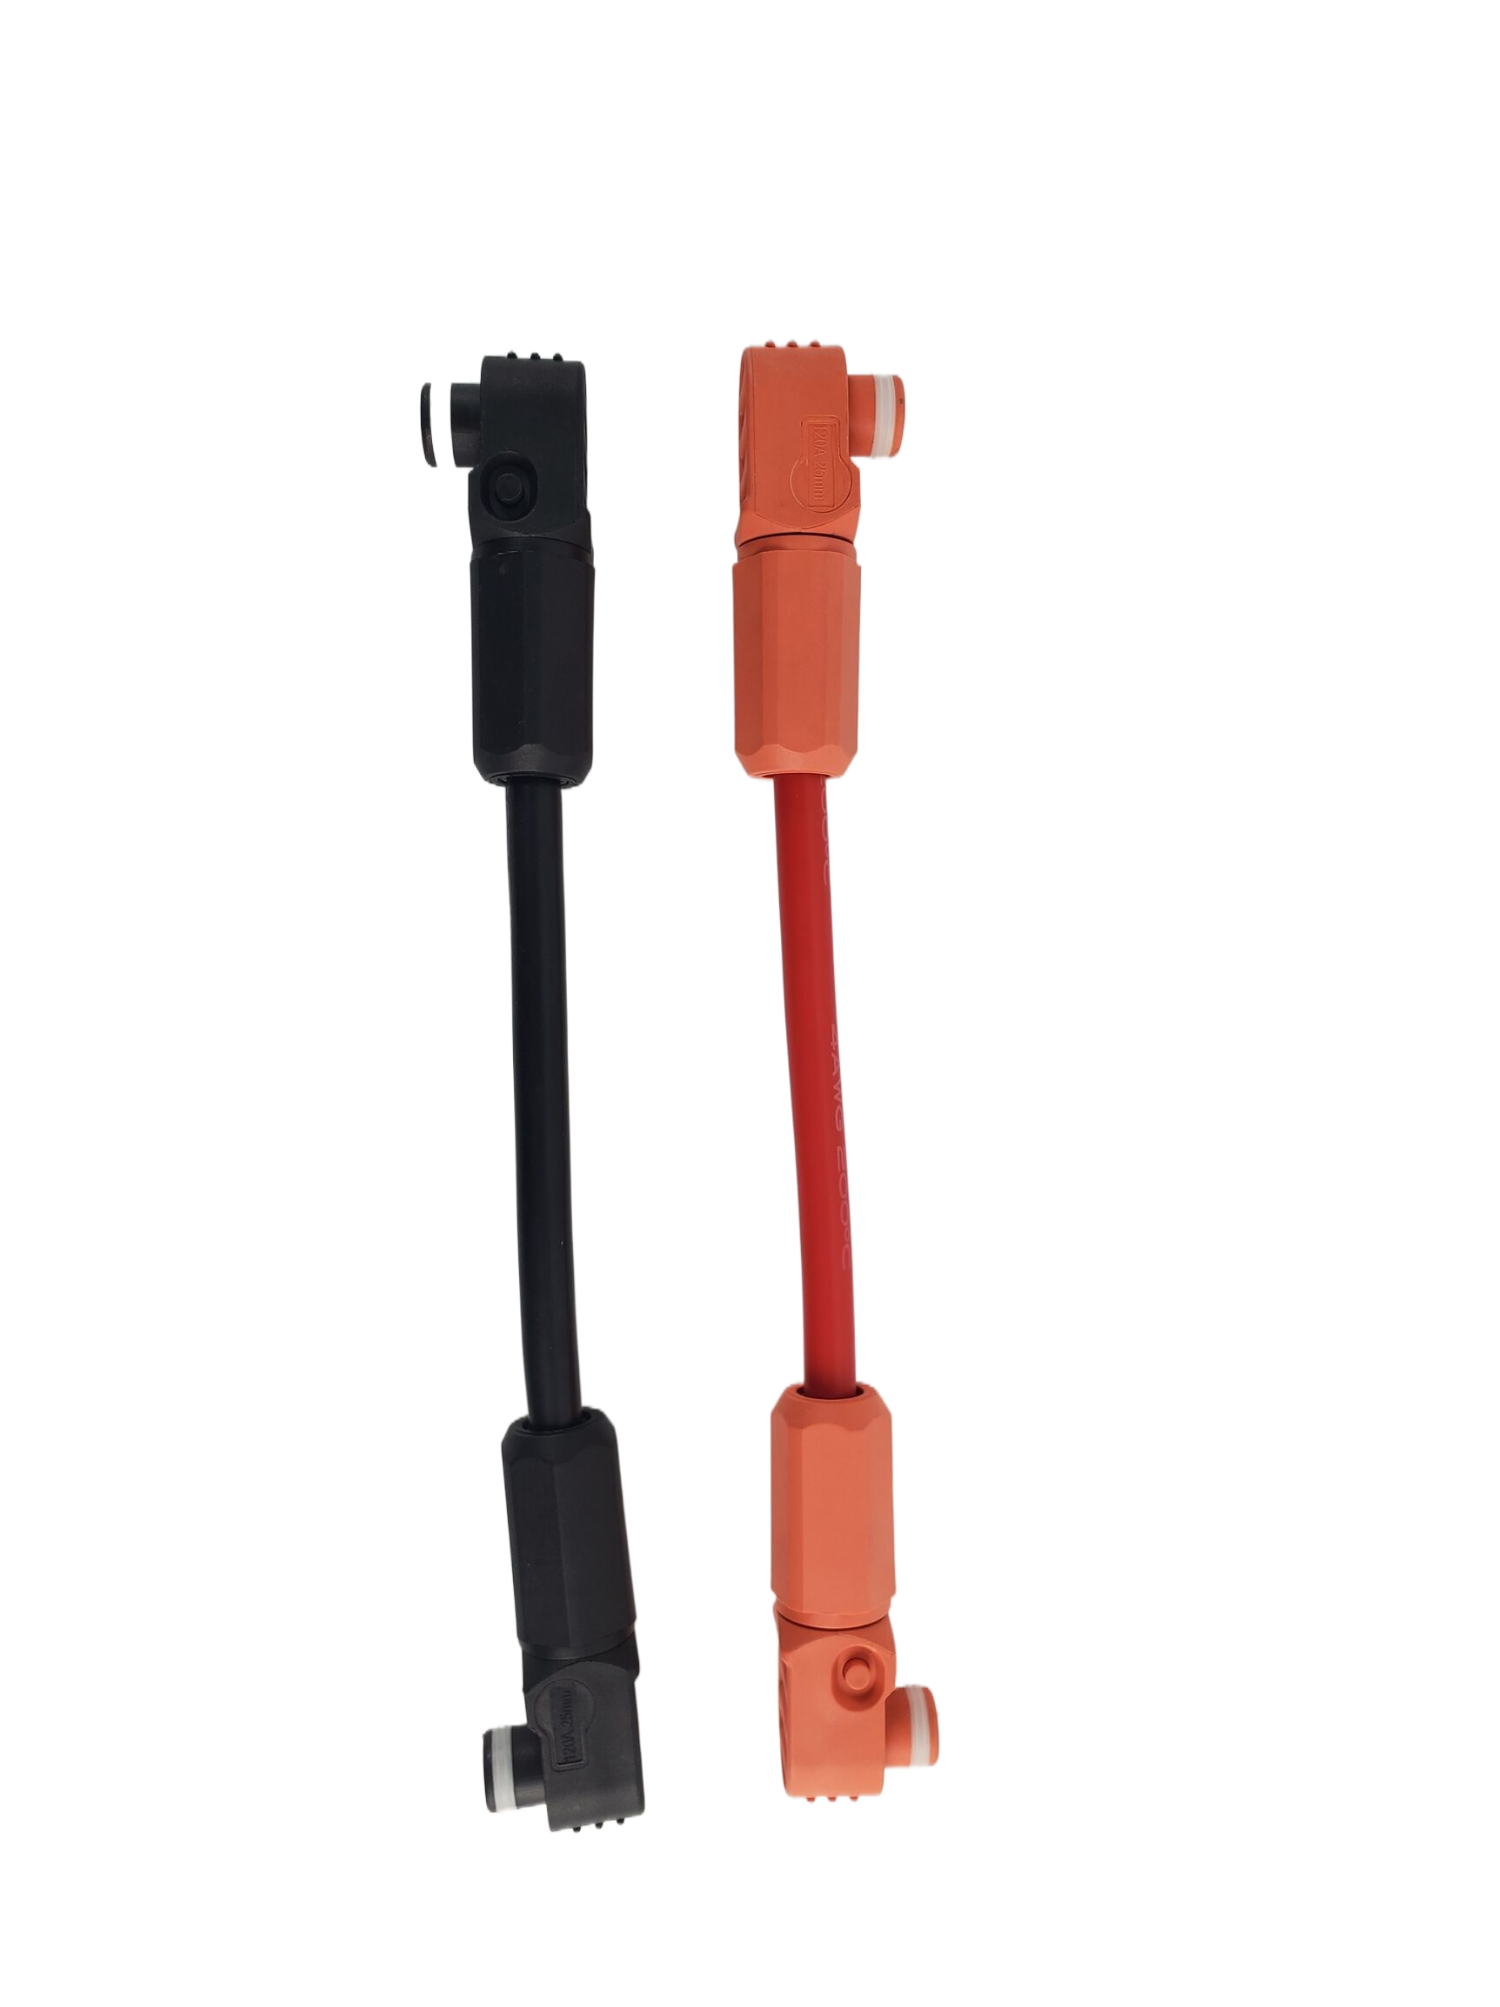 Power Parallel Cable na may connector para sa LiFePO4 Battery Pack